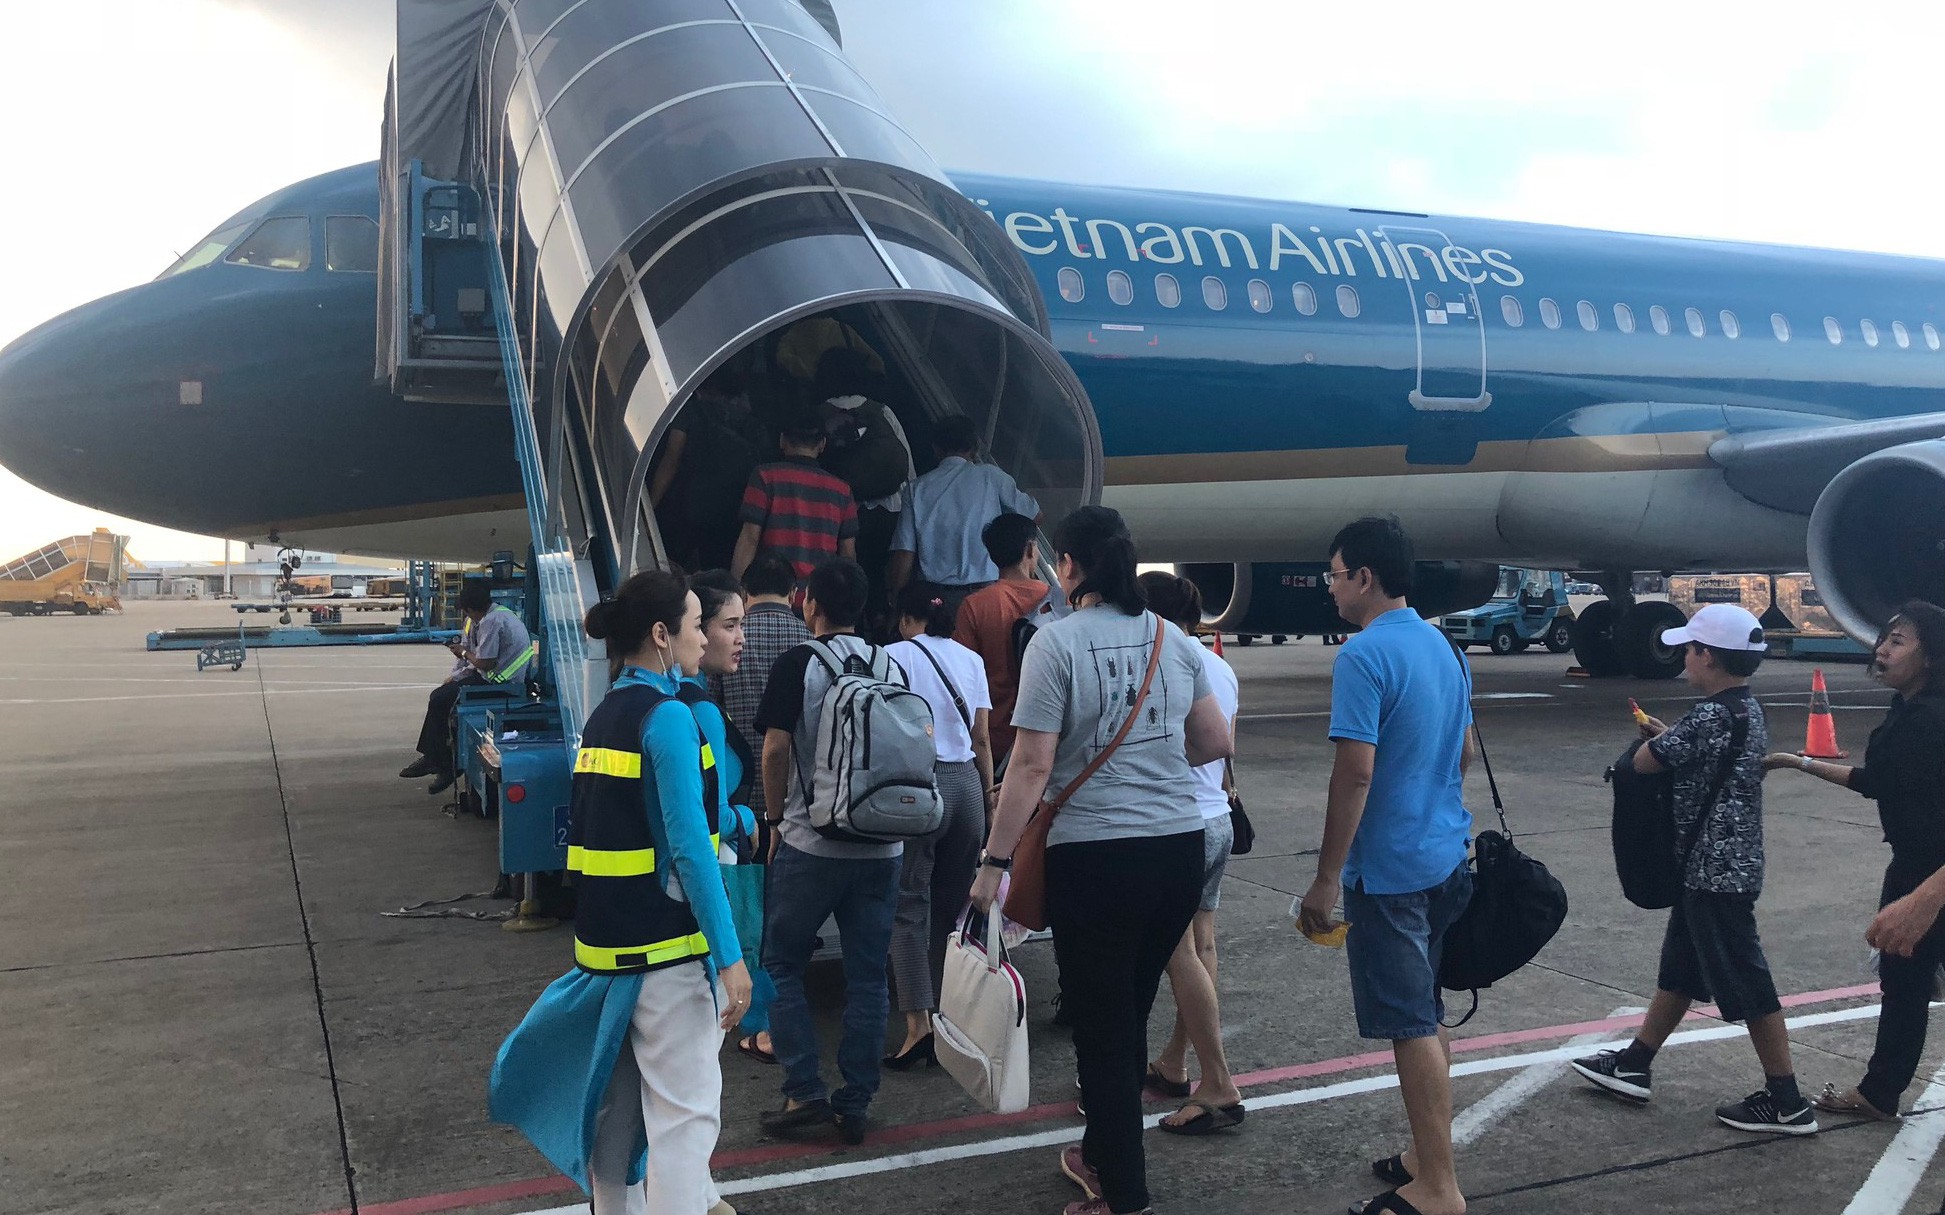 Hòa giải bất thành, tiếp viên khởi kiện Đoàn tiếp viên Vietnam Airlines